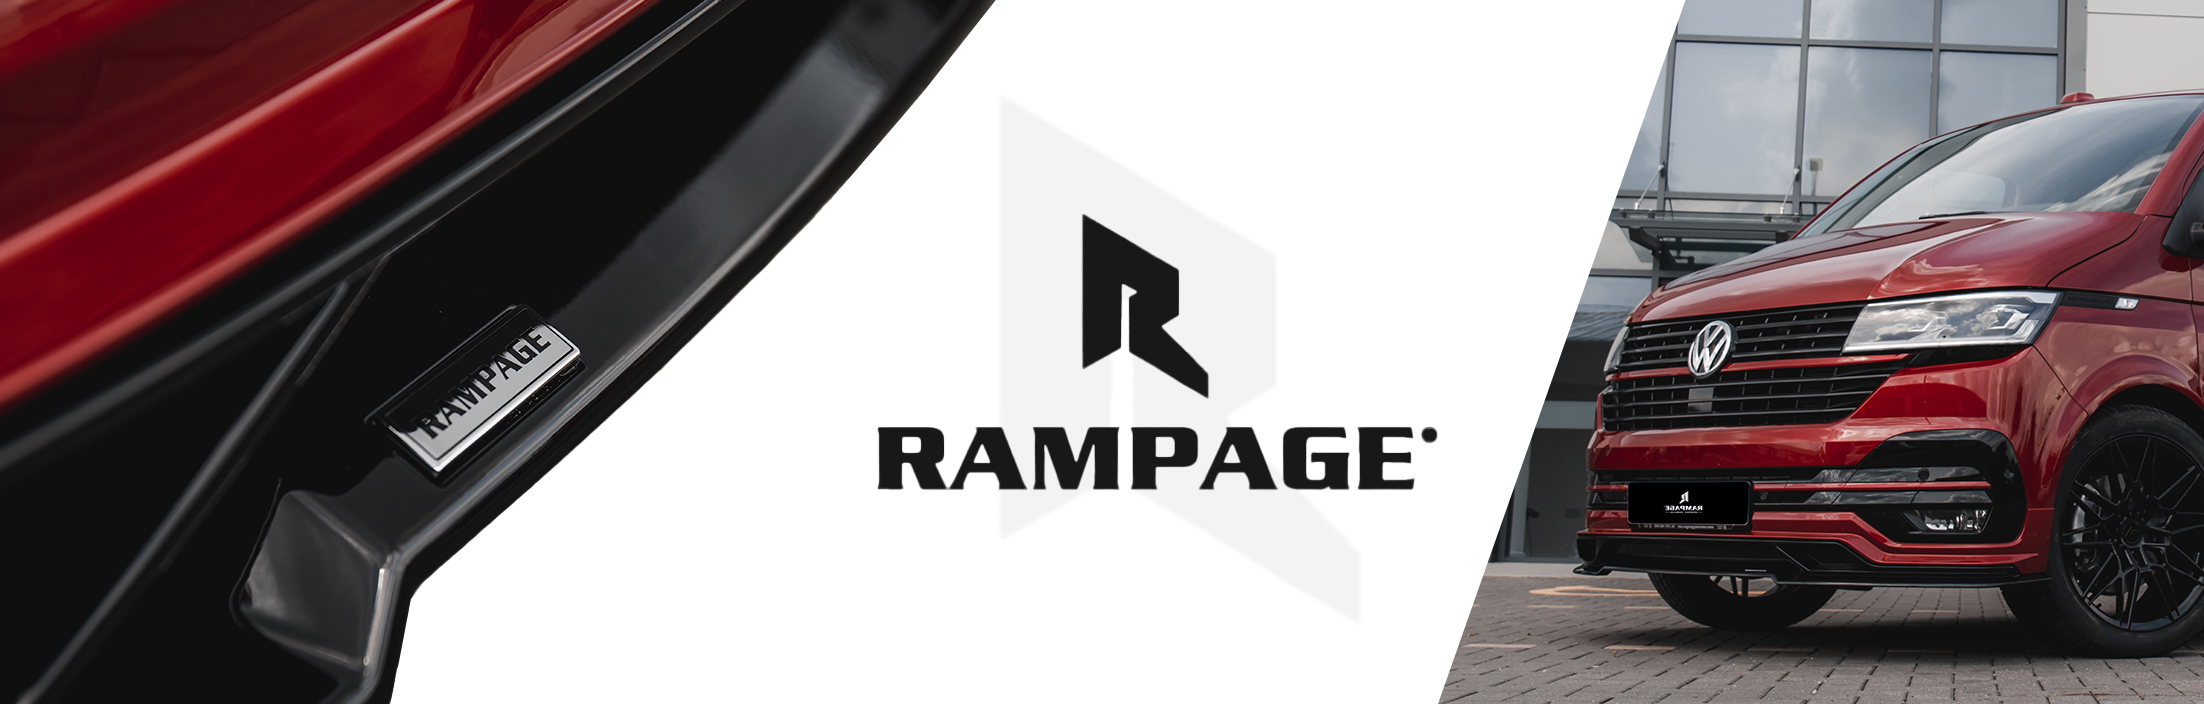 Rampage T6.1 Front Lower Splitter